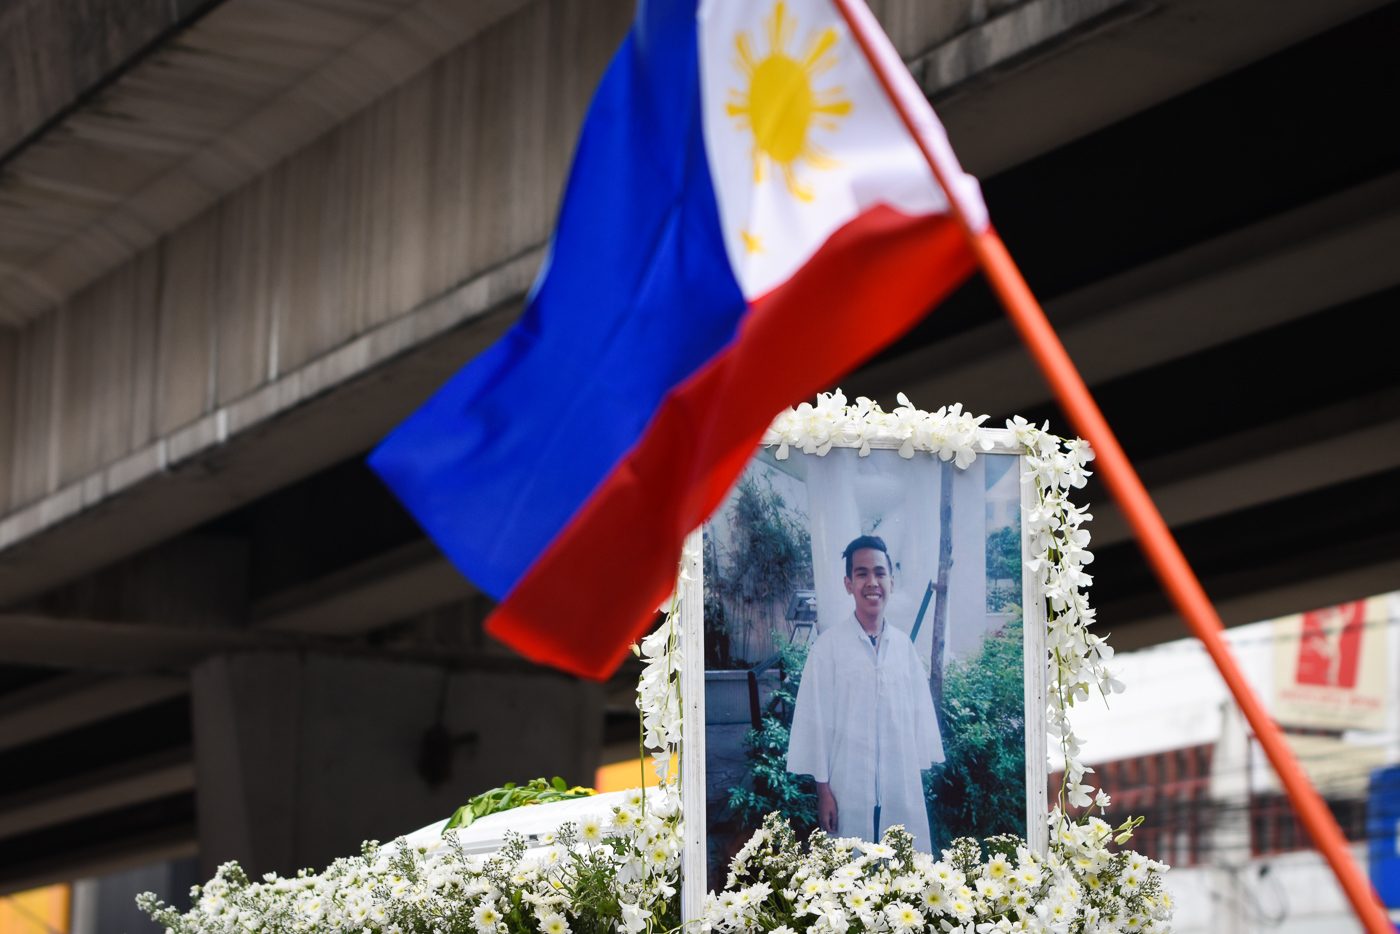 TIMELINE: Seeking justice for Kian delos Santos